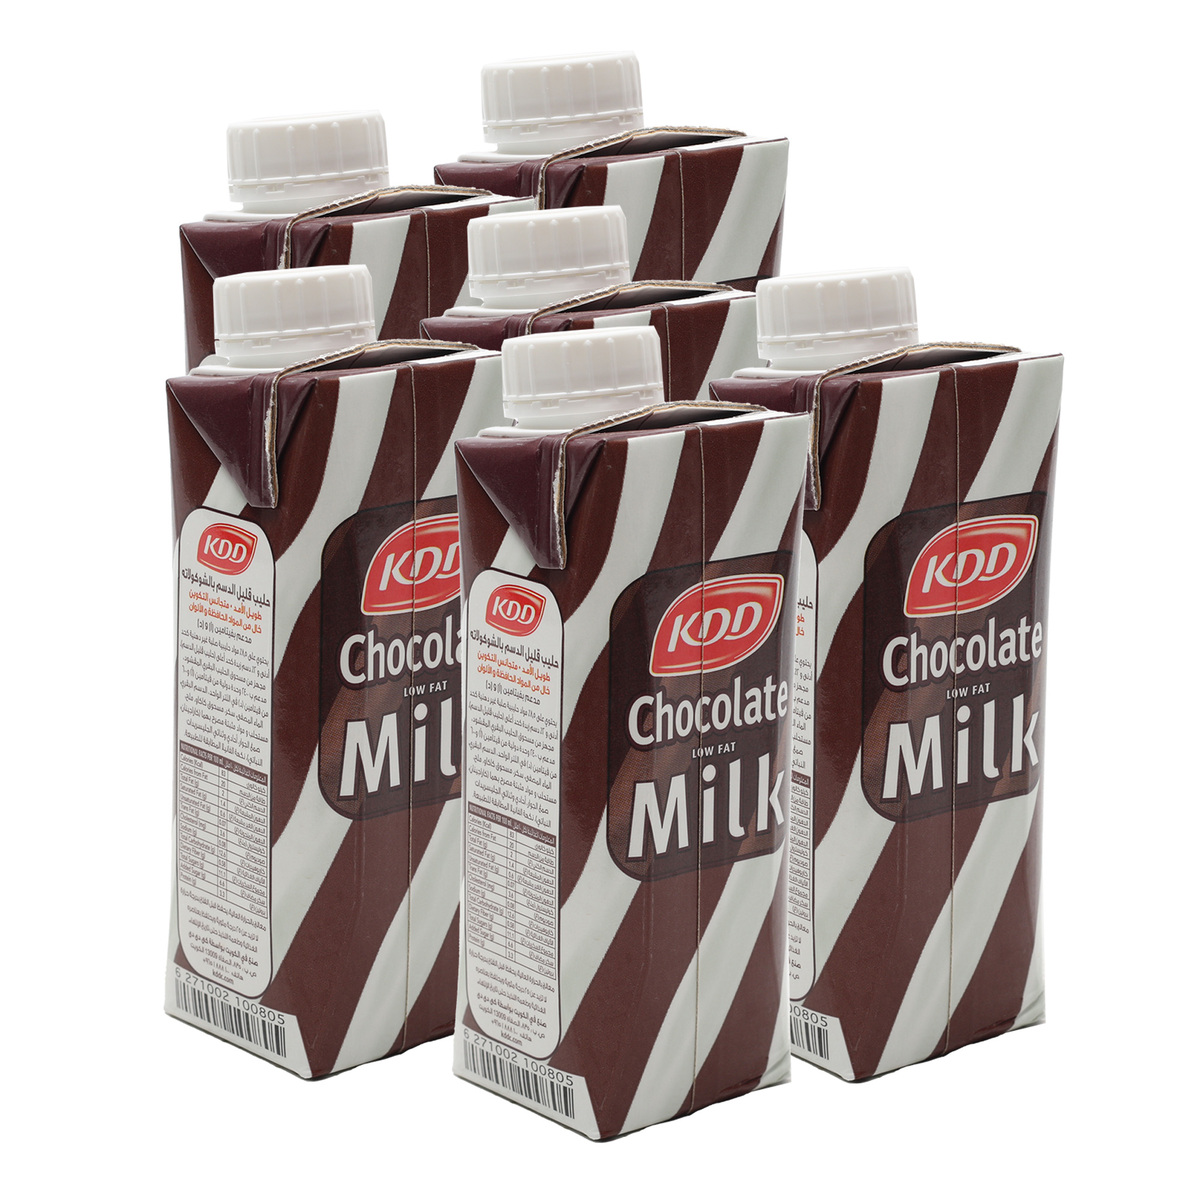 KDD Chocolate Milk Low Fat 6 x 250ml